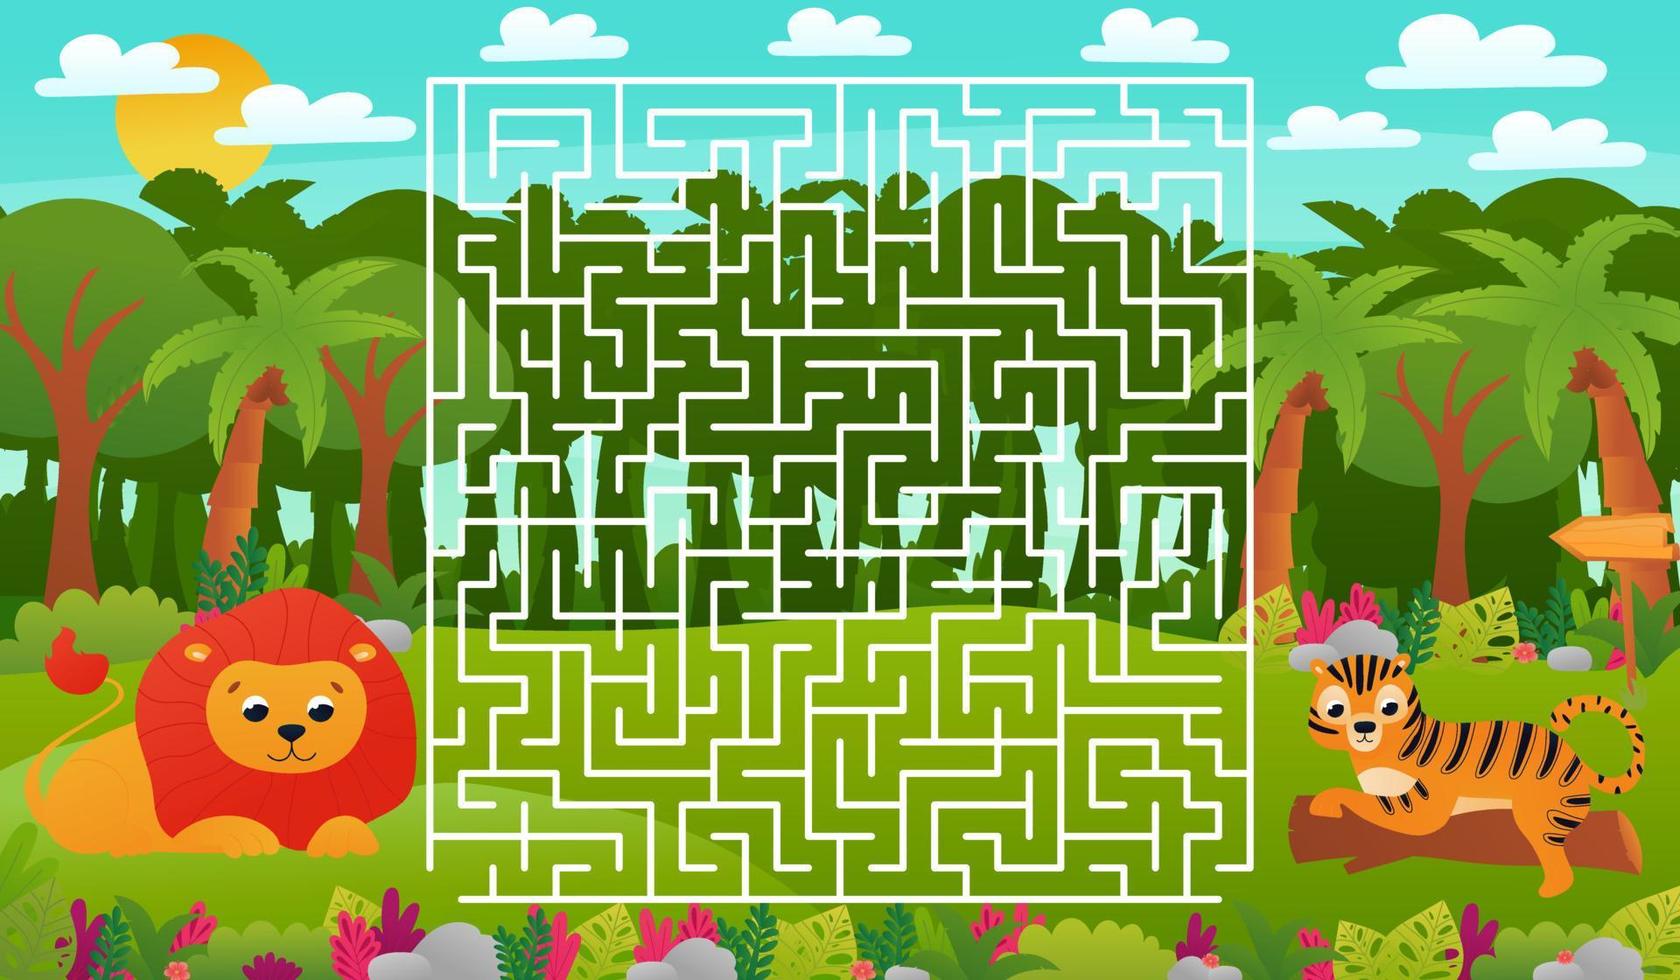 planilha educacional imprimível para crianças com quebra-cabeça de labirinto, animais selvagens da selva tropical com leão fofo vetor